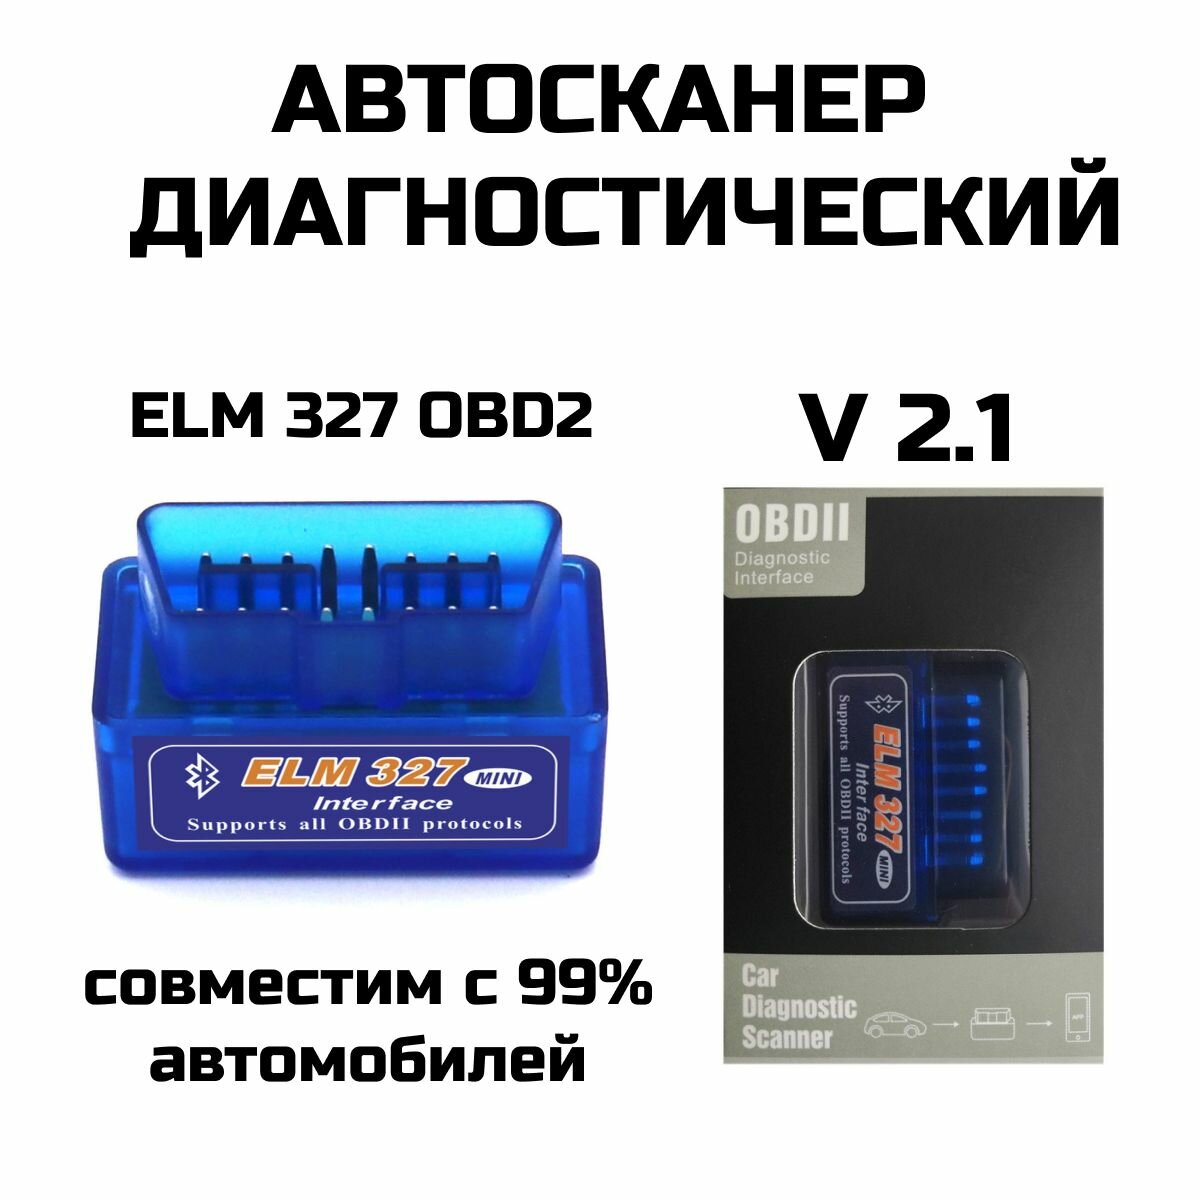 Автосканер адаптер двухплатный для диагностики автомобиля ELM327 OBD2 Bluetooth v2.1